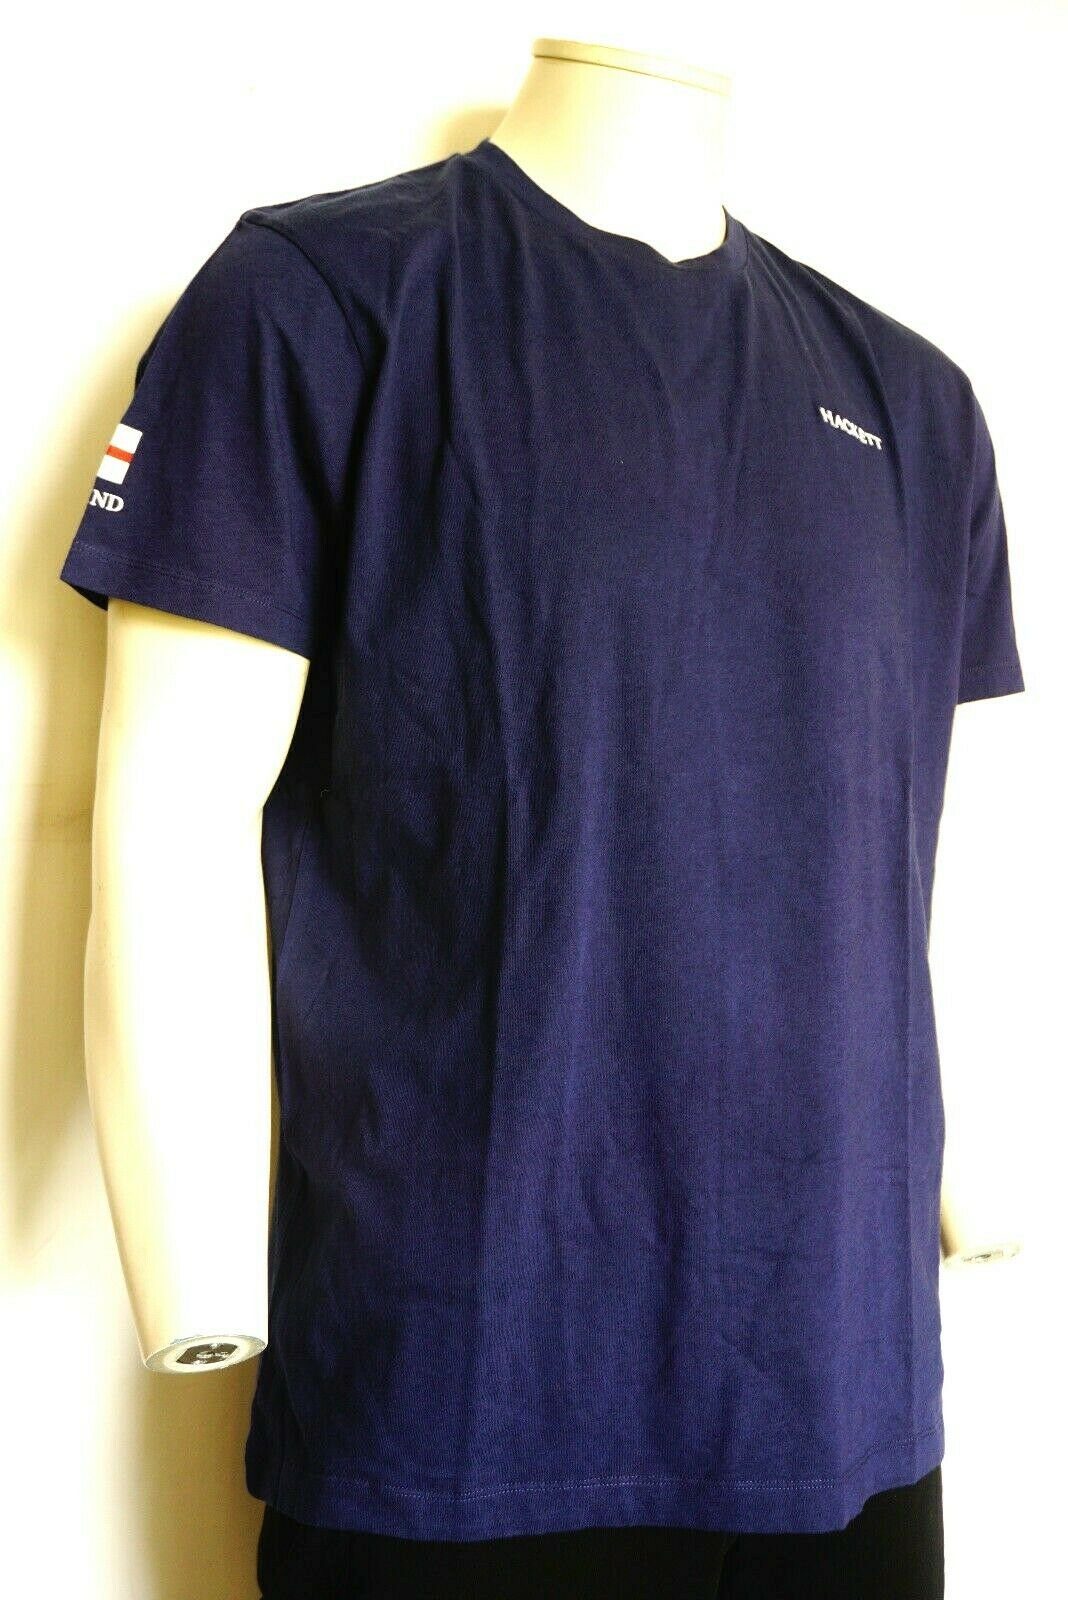 Hacket T-Shirt Hackett Herren T-shirt, Hackett England Blau T- Cup Herren shirts Kurzarm. World